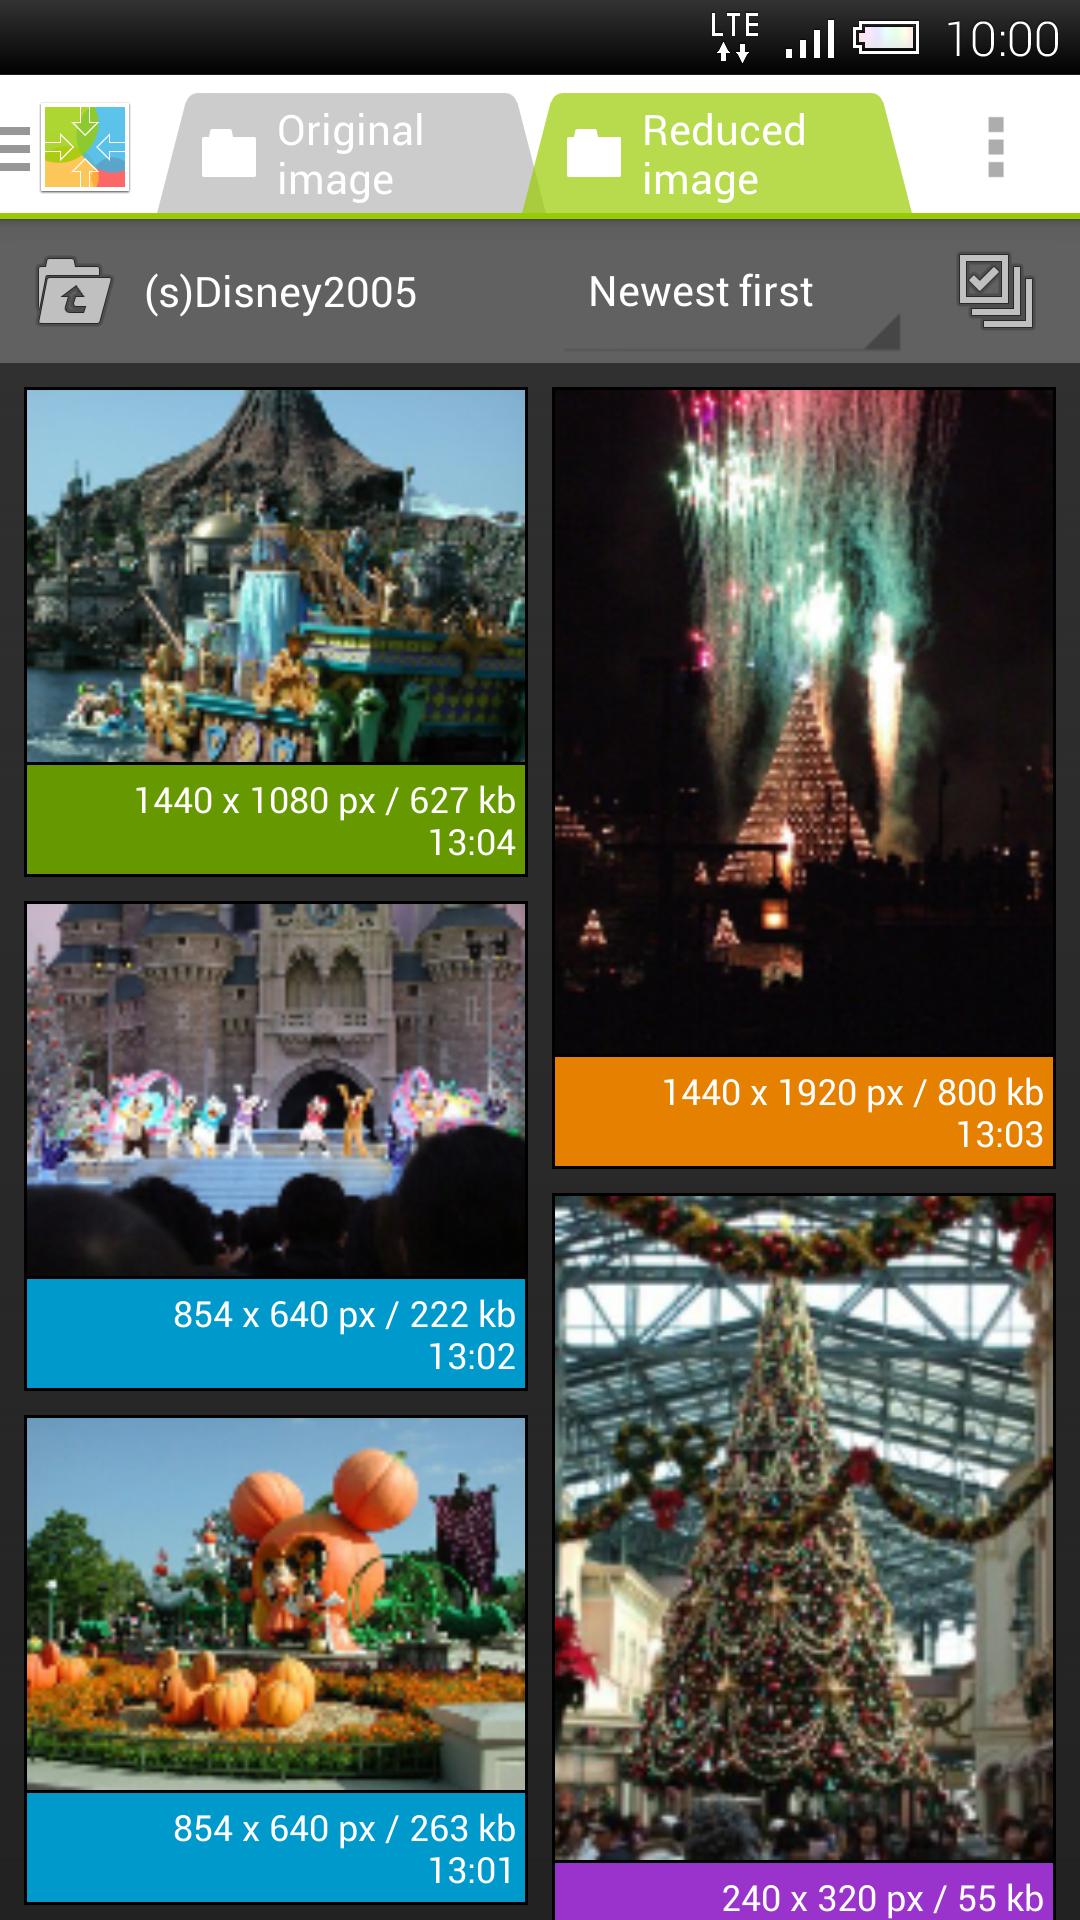 Android 用の かんたん写真縮小 ガラケー向けに自動サイズ変更 リサイズ Apk をダウンロード